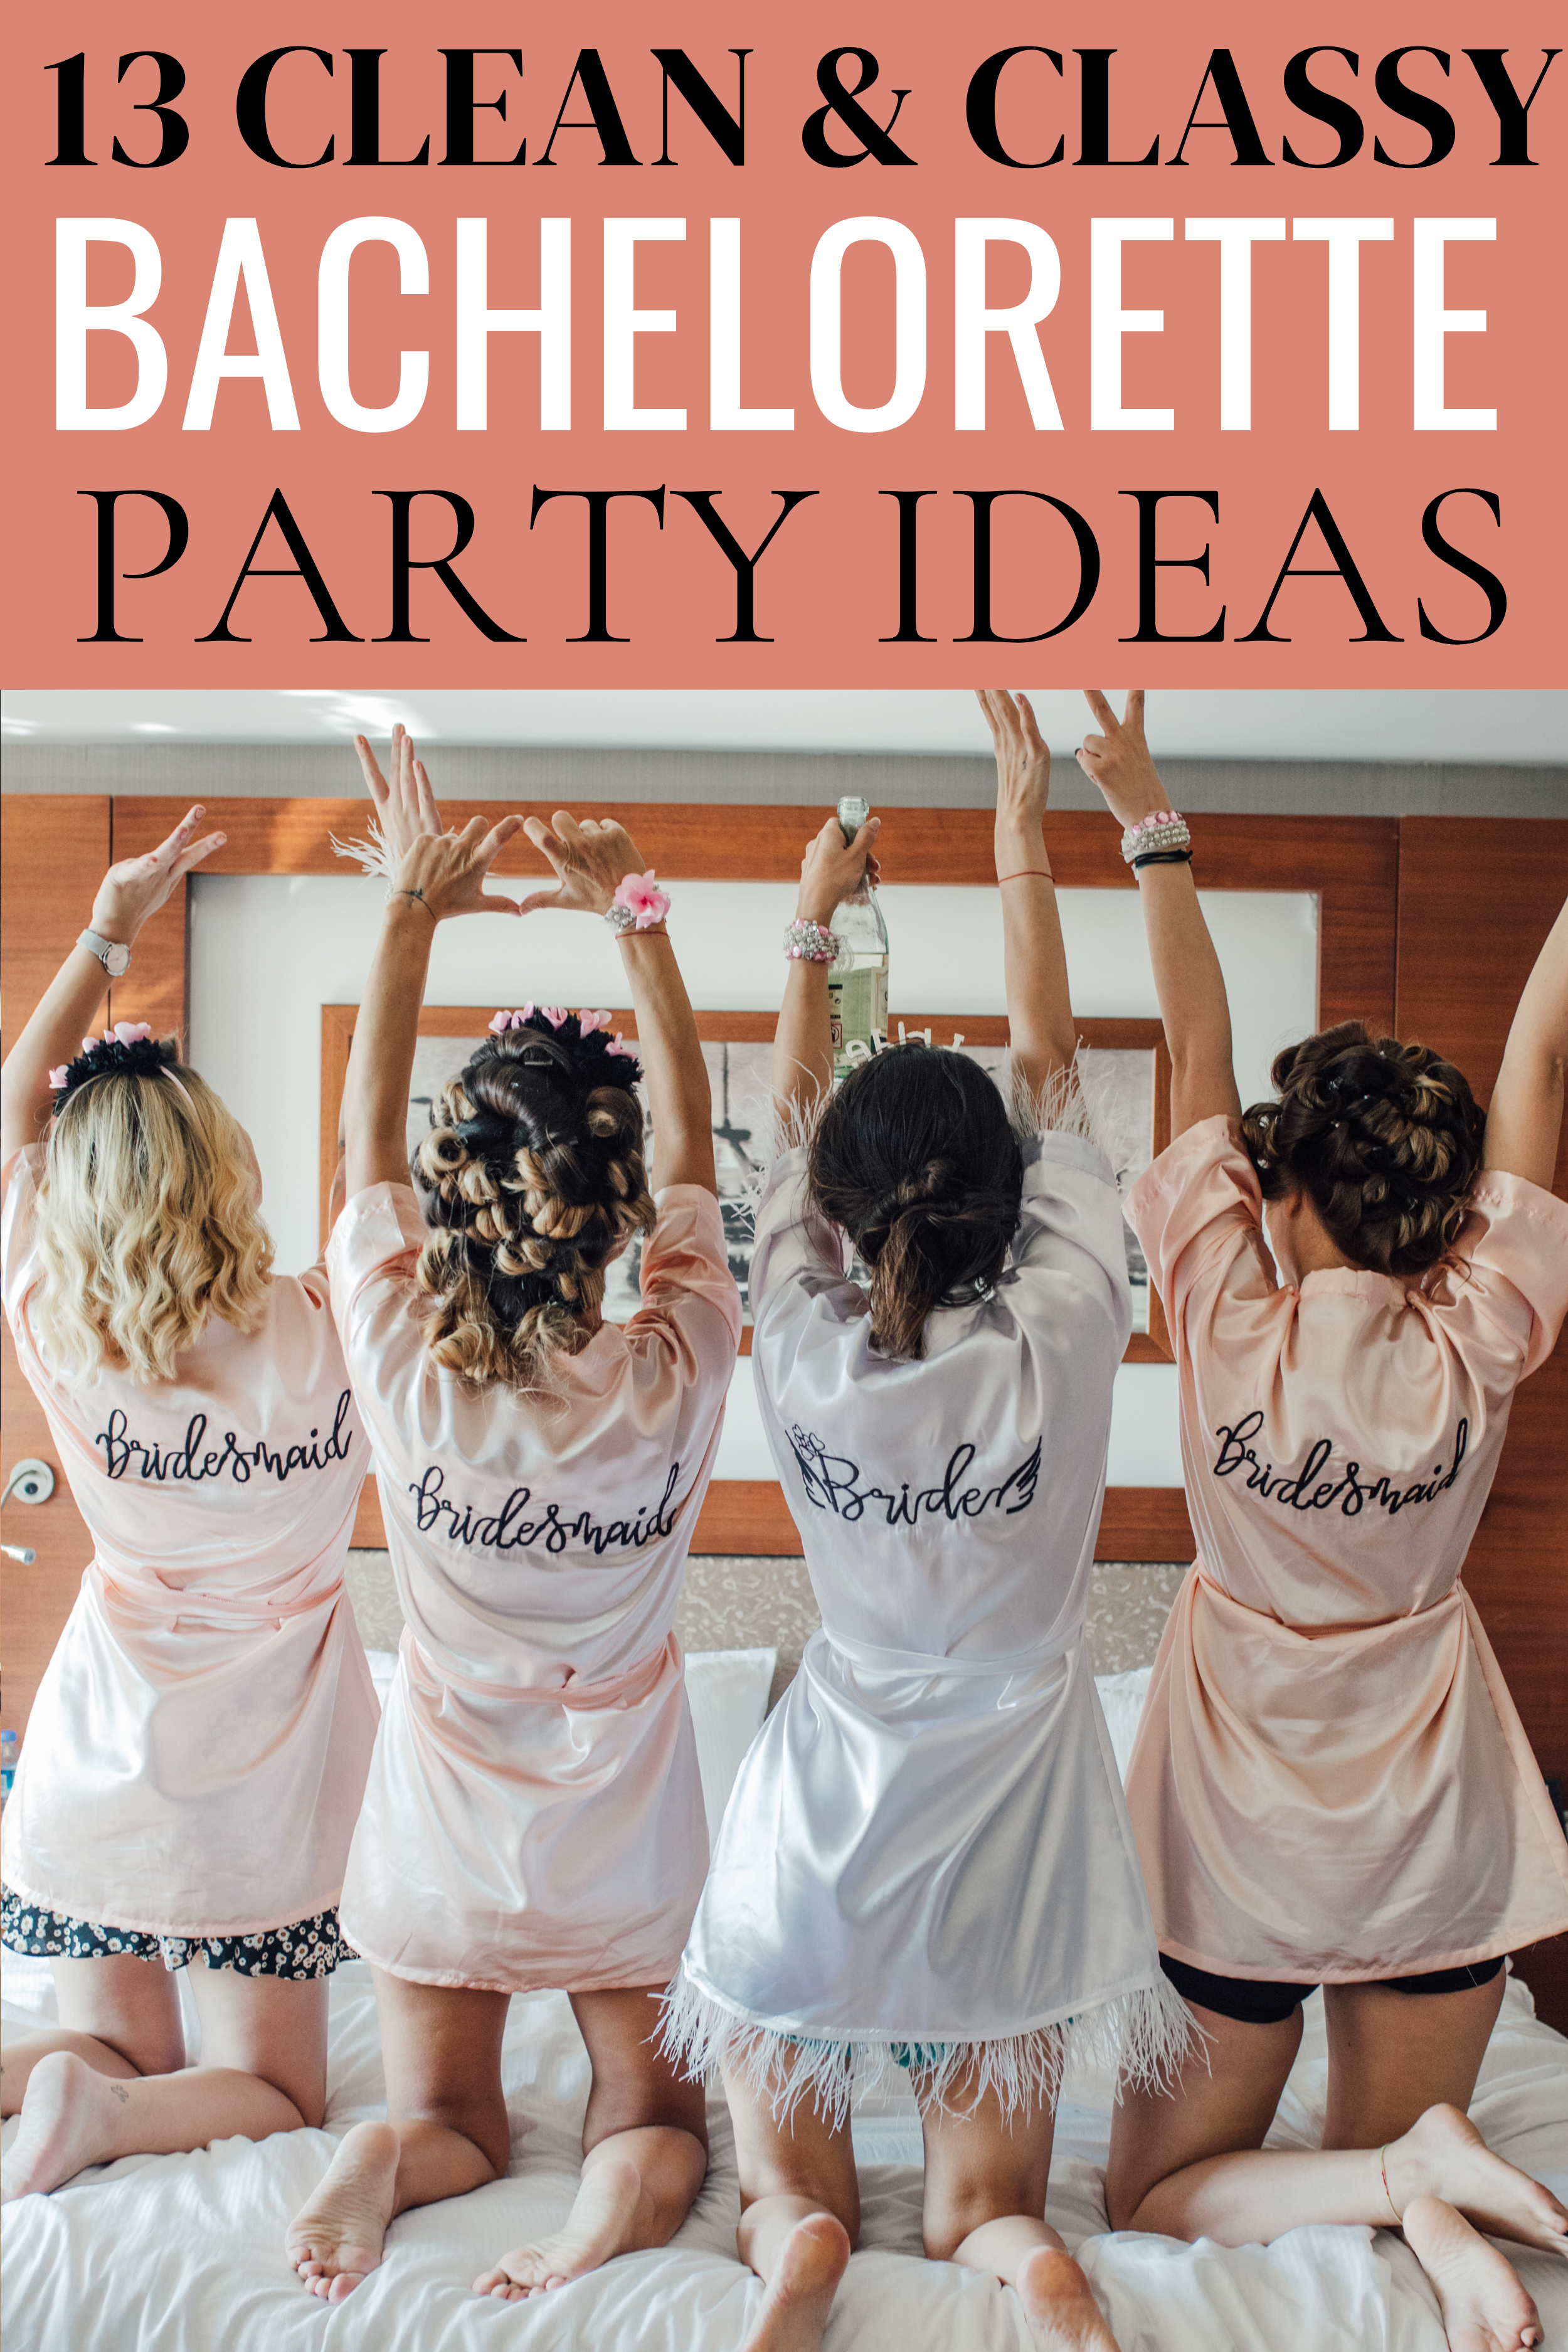 bachelorette party ideas, clean bachelorette party, classy bachelorette party ideas, fun bachelorette ideas